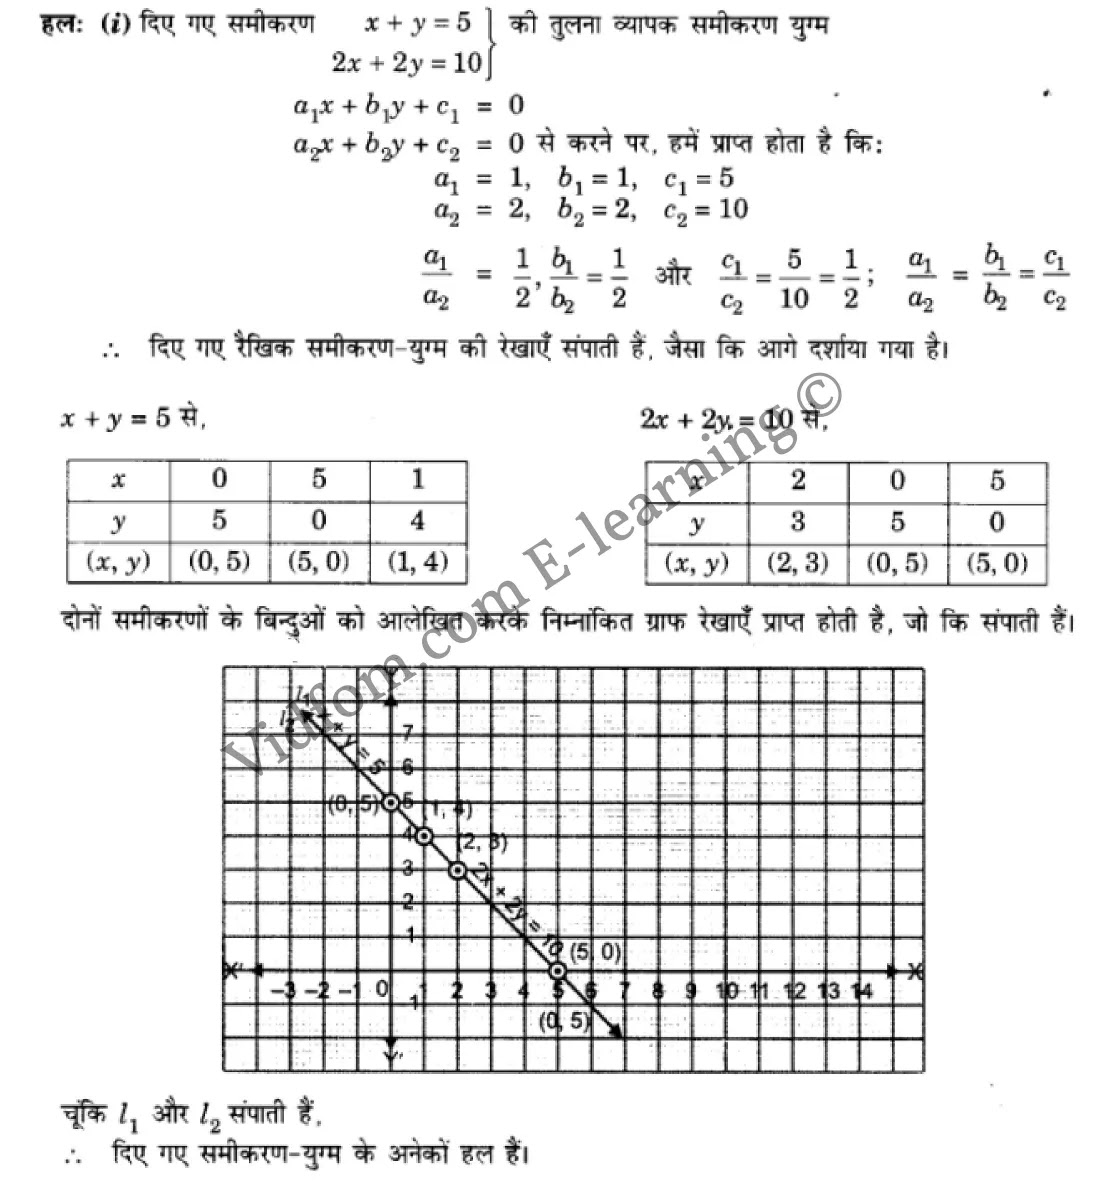 कक्षा 10 गणित  के नोट्स  हिंदी में एनसीईआरटी समाधान,     class 10 Maths chapter 3,   class 10 Maths chapter 3 ncert solutions in Maths,  class 10 Maths chapter 3 notes in hindi,   class 10 Maths chapter 3 question answer,   class 10 Maths chapter 3 notes,   class 10 Maths chapter 3 class 10 Maths  chapter 3 in  hindi,    class 10 Maths chapter 3 important questions in  hindi,   class 10 Maths hindi  chapter 3 notes in hindi,   class 10 Maths  chapter 3 test,   class 10 Maths  chapter 3 class 10 Maths  chapter 3 pdf,   class 10 Maths  chapter 3 notes pdf,   class 10 Maths  chapter 3 exercise solutions,  class 10 Maths  chapter 3,  class 10 Maths  chapter 3 notes study rankers,  class 10 Maths  chapter 3 notes,   class 10 Maths hindi  chapter 3 notes,    class 10 Maths   chapter 3  class 10  notes pdf,  class 10 Maths  chapter 3 class 10  notes  ncert,  class 10 Maths  chapter 3 class 10 pdf,   class 10 Maths  chapter 3  book,   class 10 Maths  chapter 3 quiz class 10  ,    10  th class 10 Maths chapter 3  book up board,   up board 10  th class 10 Maths chapter 3 notes,  class 10 Maths,   class 10 Maths ncert solutions in Maths,   class 10 Maths notes in hindi,   class 10 Maths question answer,   class 10 Maths notes,  class 10 Maths class 10 Maths  chapter 3 in  hindi,    class 10 Maths important questions in  hindi,   class 10 Maths notes in hindi,    class 10 Maths test,  class 10 Maths class 10 Maths  chapter 3 pdf,   class 10 Maths notes pdf,   class 10 Maths exercise solutions,   class 10 Maths,  class 10 Maths notes study rankers,   class 10 Maths notes,  class 10 Maths notes,   class 10 Maths  class 10  notes pdf,   class 10 Maths class 10  notes  ncert,   class 10 Maths class 10 pdf,   class 10 Maths  book,  class 10 Maths quiz class 10  ,  10  th class 10 Maths    book up board,    up board 10  th class 10 Maths notes,      कक्षा 10 गणित अध्याय 3 ,  कक्षा 10 गणित, कक्षा 10 गणित अध्याय 3  के नोट्स हिंदी में,  कक्षा 10 का गणित अध्याय 3 का प्रश्न उत्तर,  कक्षा 10 गणित अध्याय 3  के नोट्स,  10 कक्षा गणित  हिंदी में, कक्षा 10 गणित अध्याय 3  हिंदी में,  कक्षा 10 गणित अध्याय 3  महत्वपूर्ण प्रश्न हिंदी में, कक्षा 10   हिंदी के नोट्स  हिंदी में, गणित हिंदी  कक्षा 10 नोट्स pdf,    गणित हिंदी  कक्षा 10 नोट्स 2021 ncert,  गणित हिंदी  कक्षा 10 pdf,   गणित हिंदी  पुस्तक,   गणित हिंदी की बुक,   गणित हिंदी  प्रश्नोत्तरी class 10 ,  10   वीं गणित  पुस्तक up board,   बिहार बोर्ड 10  पुस्तक वीं गणित नोट्स,    गणित  कक्षा 10 नोट्स 2021 ncert,   गणित  कक्षा 10 pdf,   गणित  पुस्तक,   गणित की बुक,   गणित  प्रश्नोत्तरी class 10,   कक्षा 10 गणित,  कक्षा 10 गणित  के नोट्स हिंदी में,  कक्षा 10 का गणित का प्रश्न उत्तर,  कक्षा 10 गणित  के नोट्स, 10 कक्षा गणित 2021  हिंदी में, कक्षा 10 गणित  हिंदी में, कक्षा 10 गणित  महत्वपूर्ण प्रश्न हिंदी में, कक्षा 10 गणित  हिंदी के नोट्स  हिंदी में, गणित हिंदी  कक्षा 10 नोट्स pdf,   गणित हिंदी  कक्षा 10 नोट्स 2021 ncert,   गणित हिंदी  कक्षा 10 pdf,  गणित हिंदी  पुस्तक,   गणित हिंदी की बुक,   गणित हिंदी  प्रश्नोत्तरी class 10 ,  10   वीं गणित  पुस्तक up board,  बिहार बोर्ड 10  पुस्तक वीं गणित नोट्स,    गणित  कक्षा 10 नोट्स 2021 ncert,  गणित  कक्षा 10 pdf,   गणित  पुस्तक,  गणित की बुक,   गणित  प्रश्नोत्तरी   class 10,   10th Maths   book in hindi, 10th Maths notes in hindi, cbse books for class 10  , cbse books in hindi, cbse ncert books, class 10   Maths   notes in hindi,  class 10 Maths hindi ncert solutions, Maths 2020, Maths  2021,